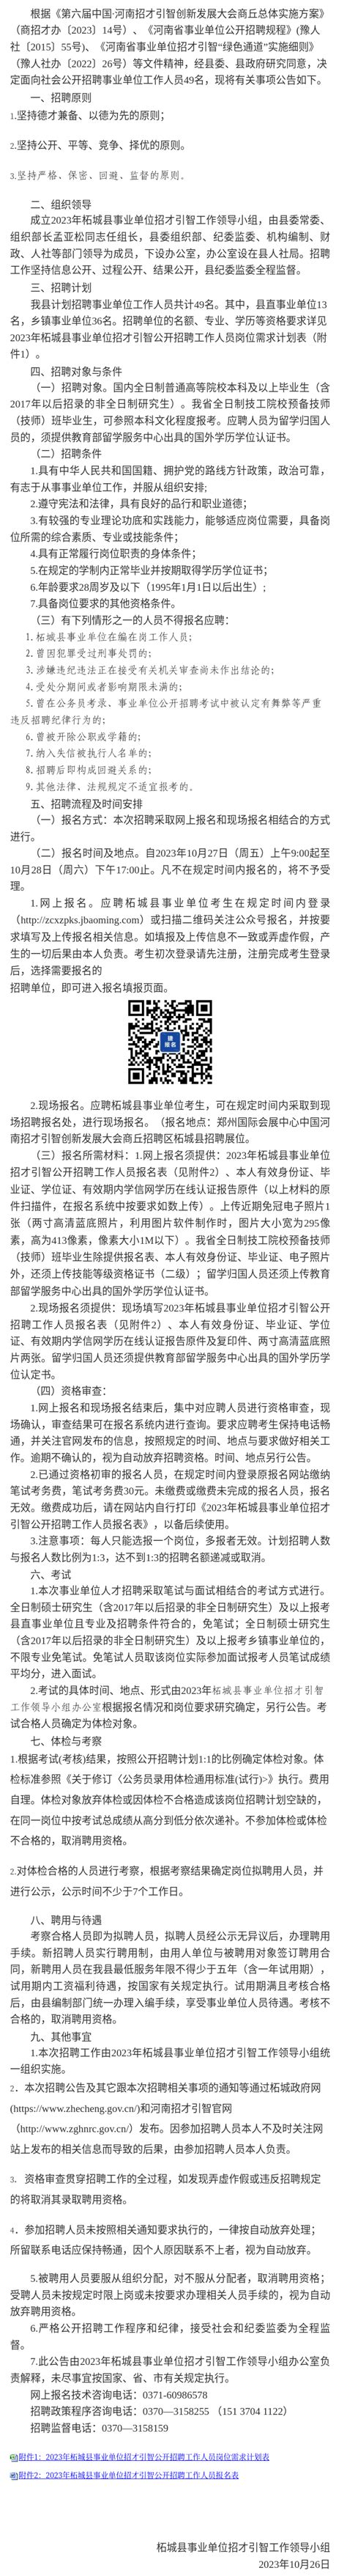 2023年柘城县事业单位招才引智公开招聘工作人员公告